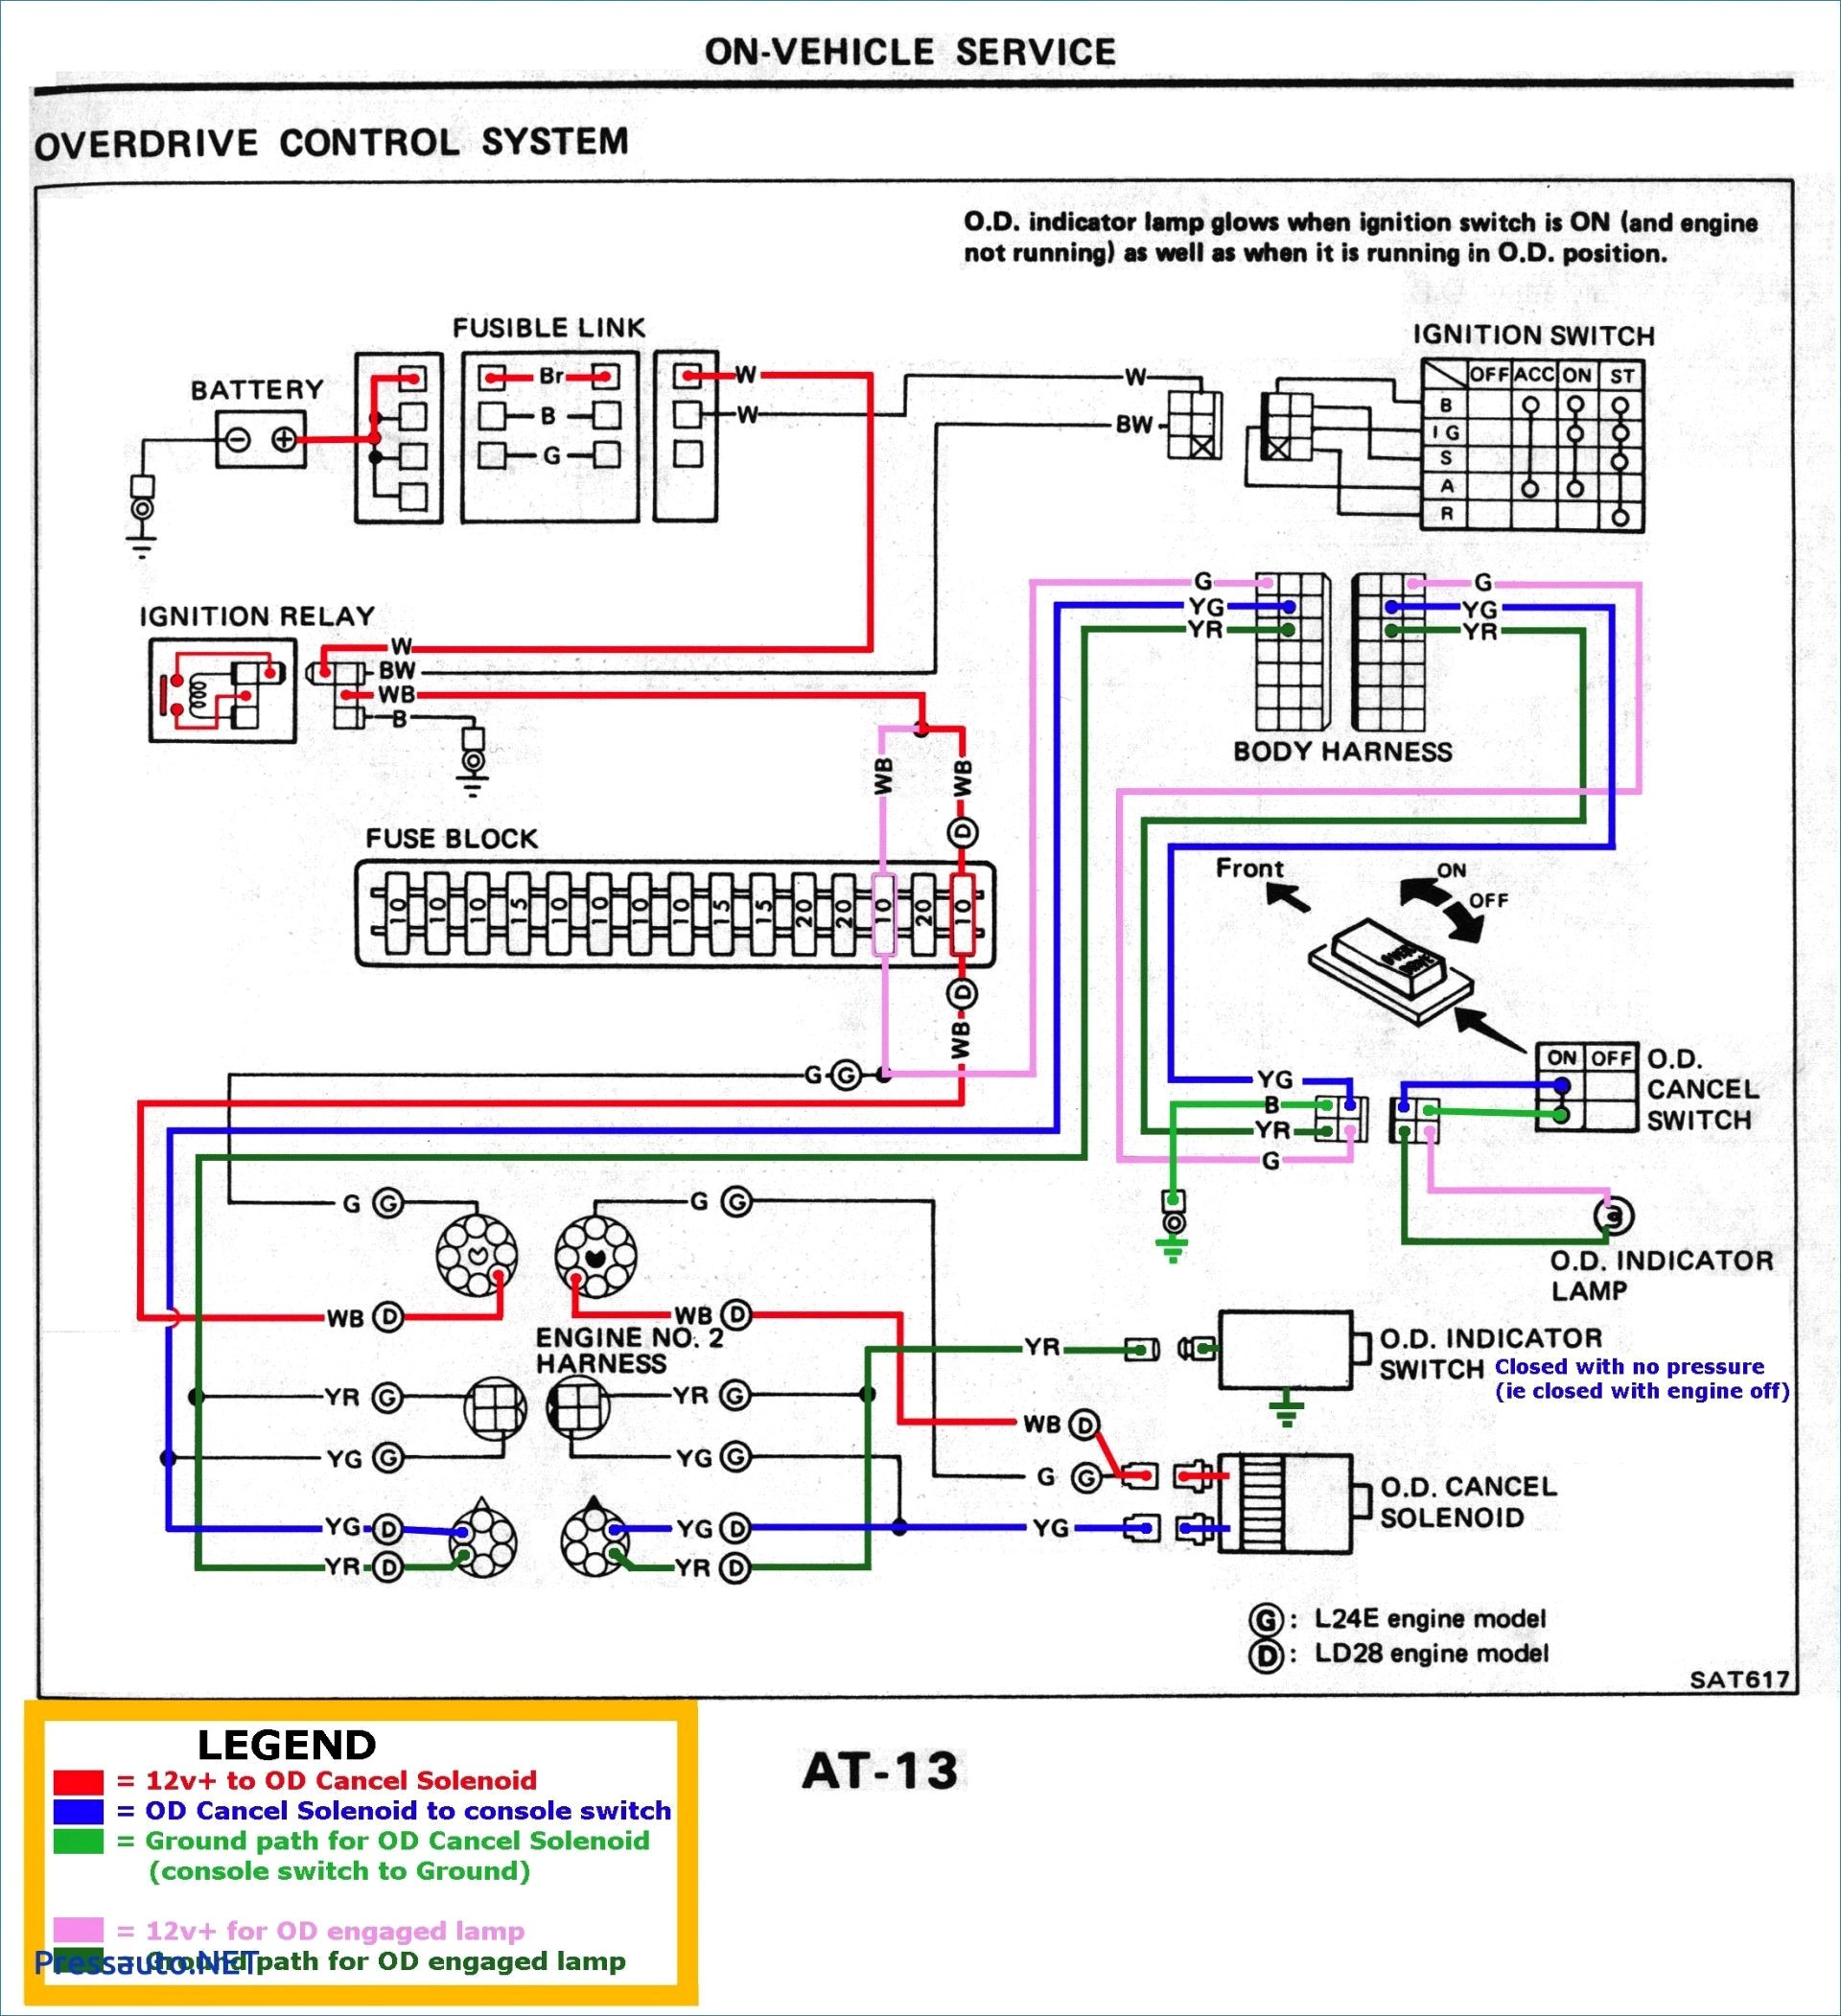 Chevy Silverado Trailer Wiring Diagram Inspirational Chevy 7 Pin Trailer Wiring Diagram Sources